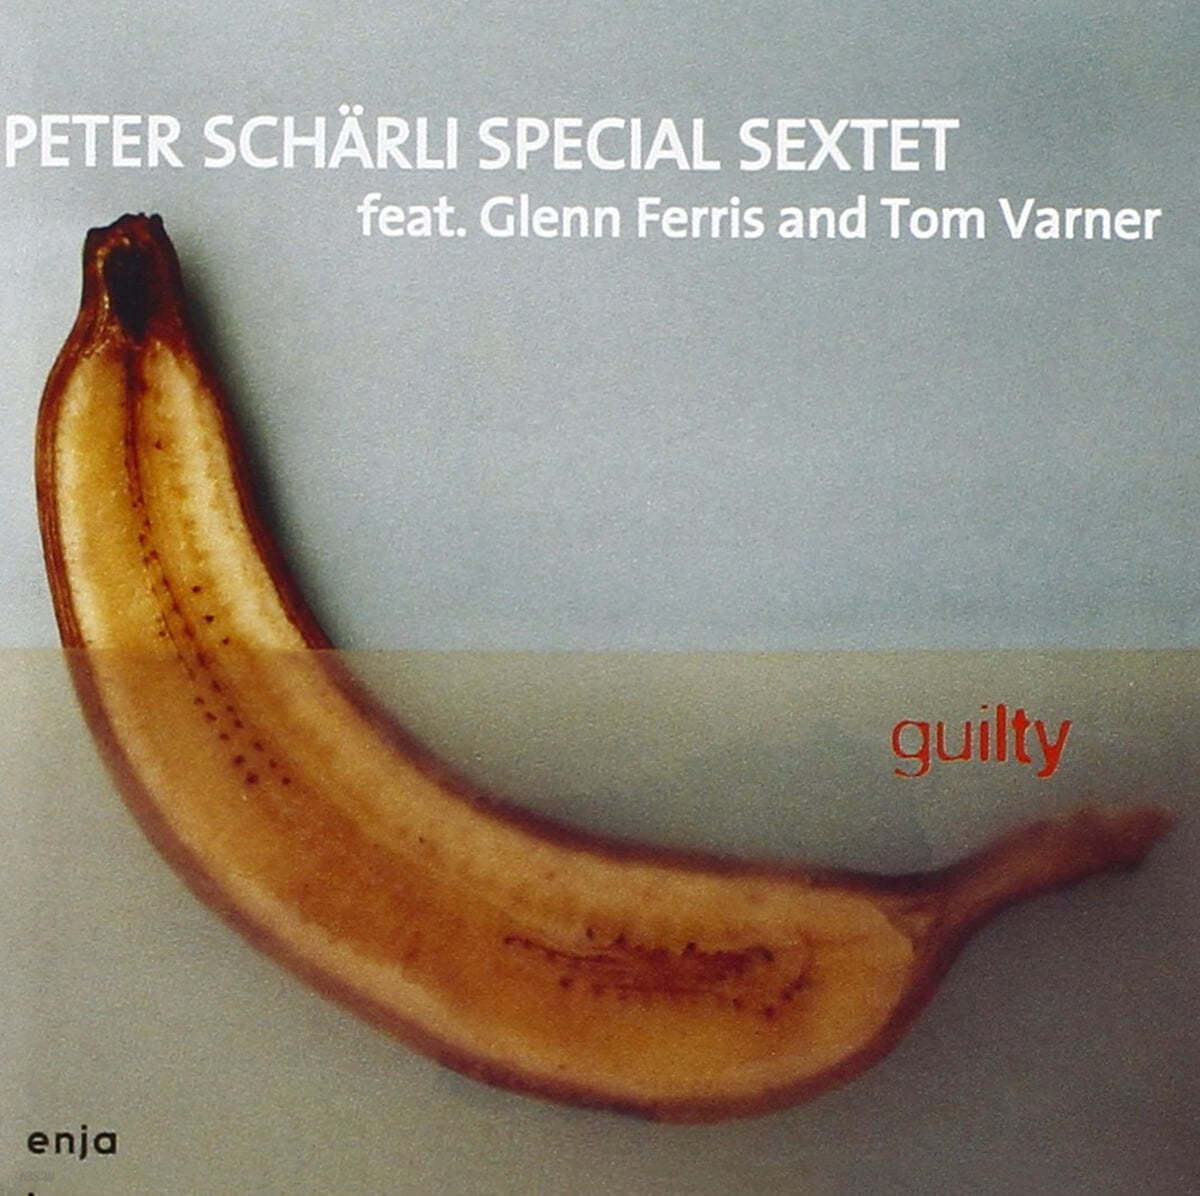 Peter Scharli Special Sextet (피터 샬리 스페셜 젝텟) - Guilty